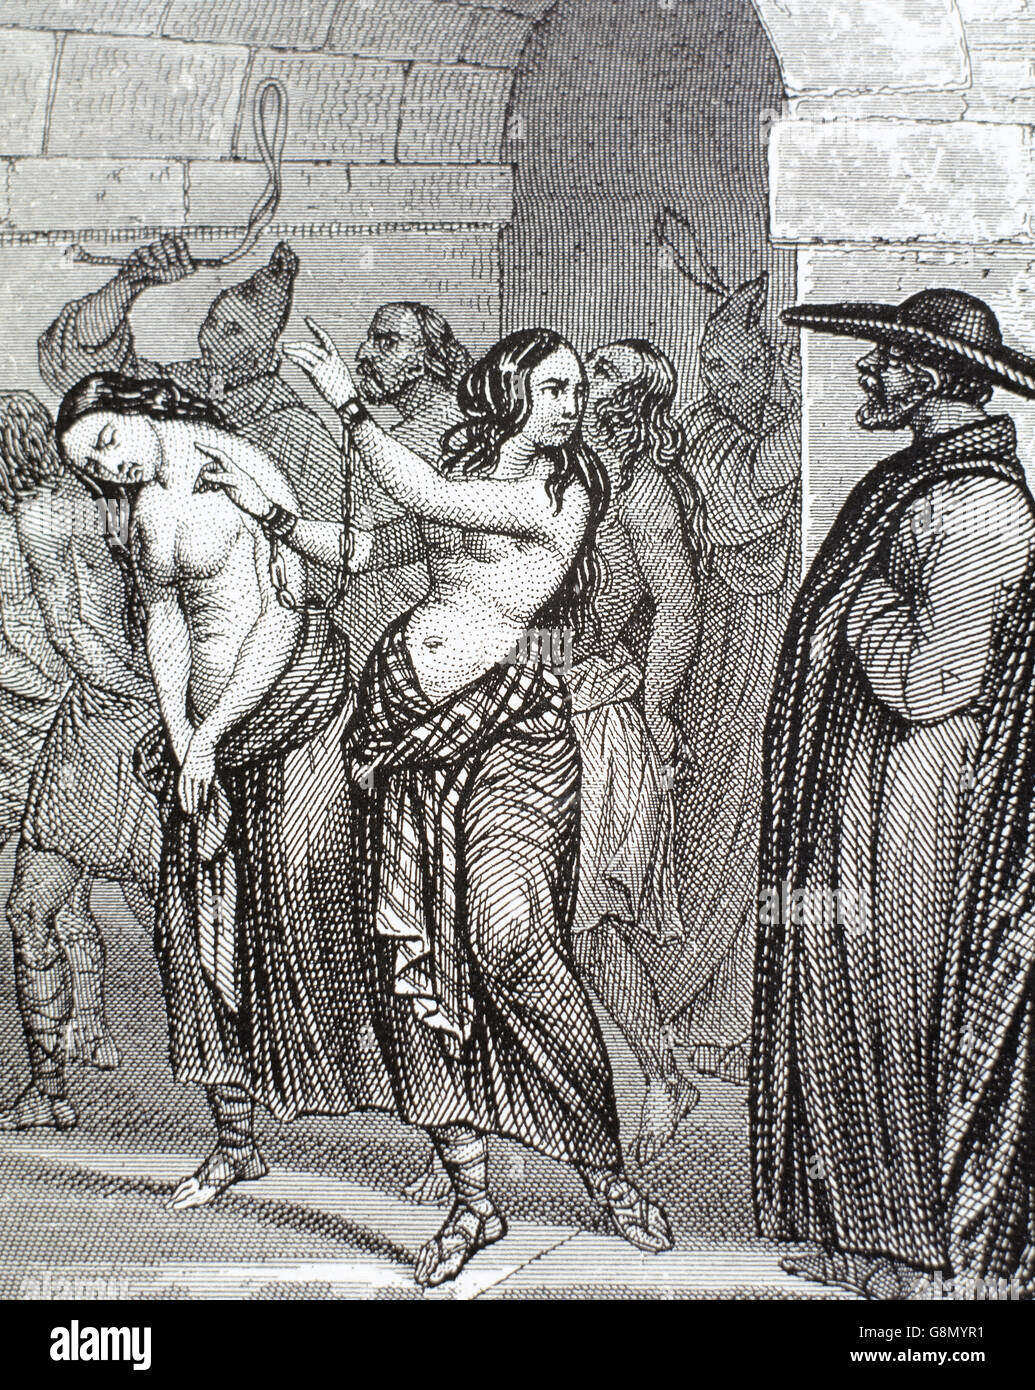 Moyen-Âge. Les femmes accusées de sorcellerie menant à la prison. Gravure, 19ème siècle. Banque D'Images